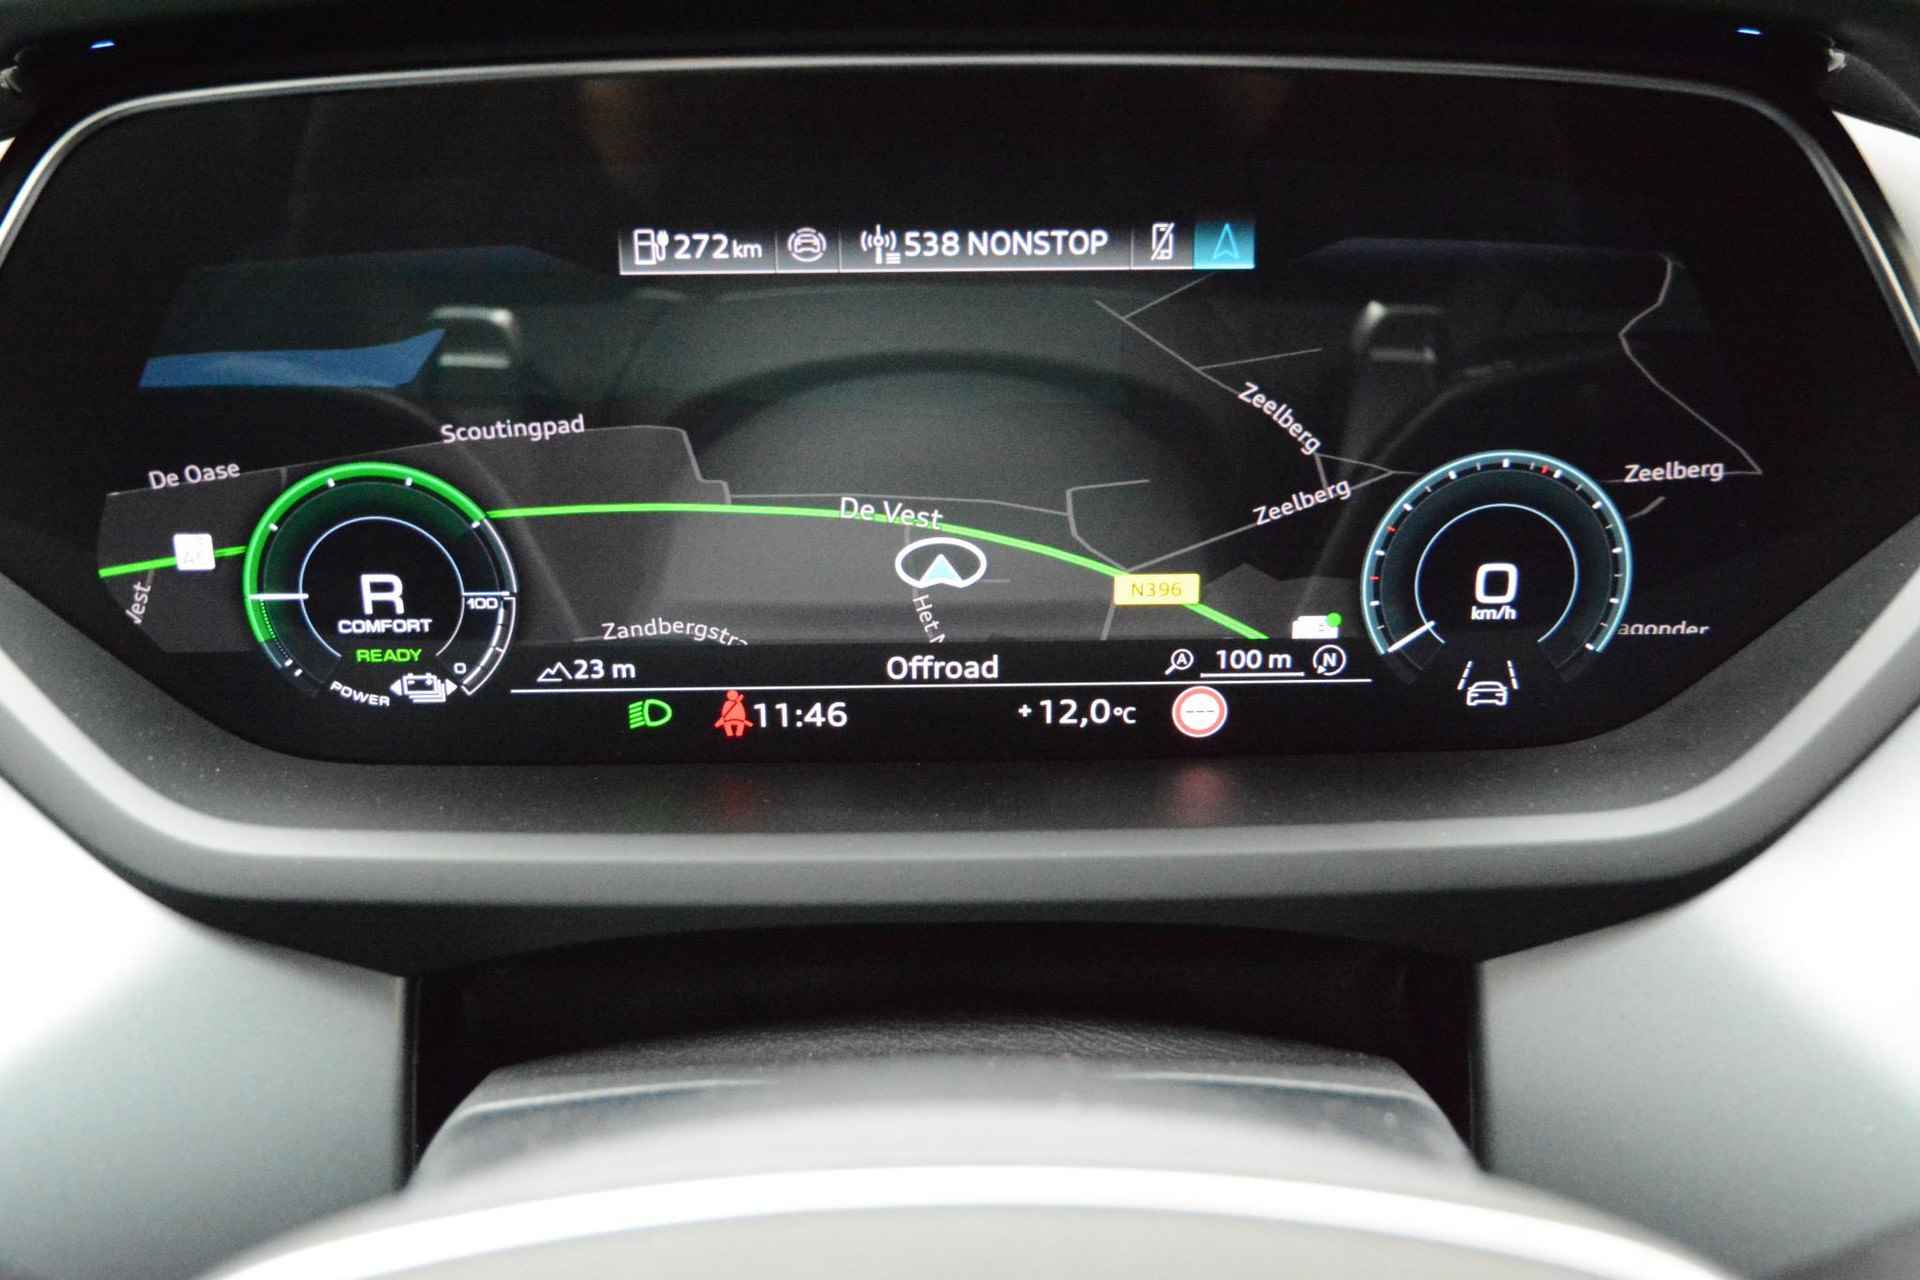 Audi e-tron GT GT Competition 93 kWh 476 PK | Nieuw | NU VAN € 143.900,00 VOOR € 123.900,00!!!! | UNIEKE KLEUR TIEFGRUN ENIGE IN NL!!! | Navigatie | Maxtrix-Laser koplampen | 360 camera | Autonome parkeerfunctie | Dynamische vierwielbesturing | Dodehoek detectie | Glazen panoramadak | Head-up display | Dynamiekpakket plus | Audi virtual cockpit plus | Stoelverwarming voor en achter | Lichtpakket plus ambient light | Optiekpakket zwart plus - 15/30